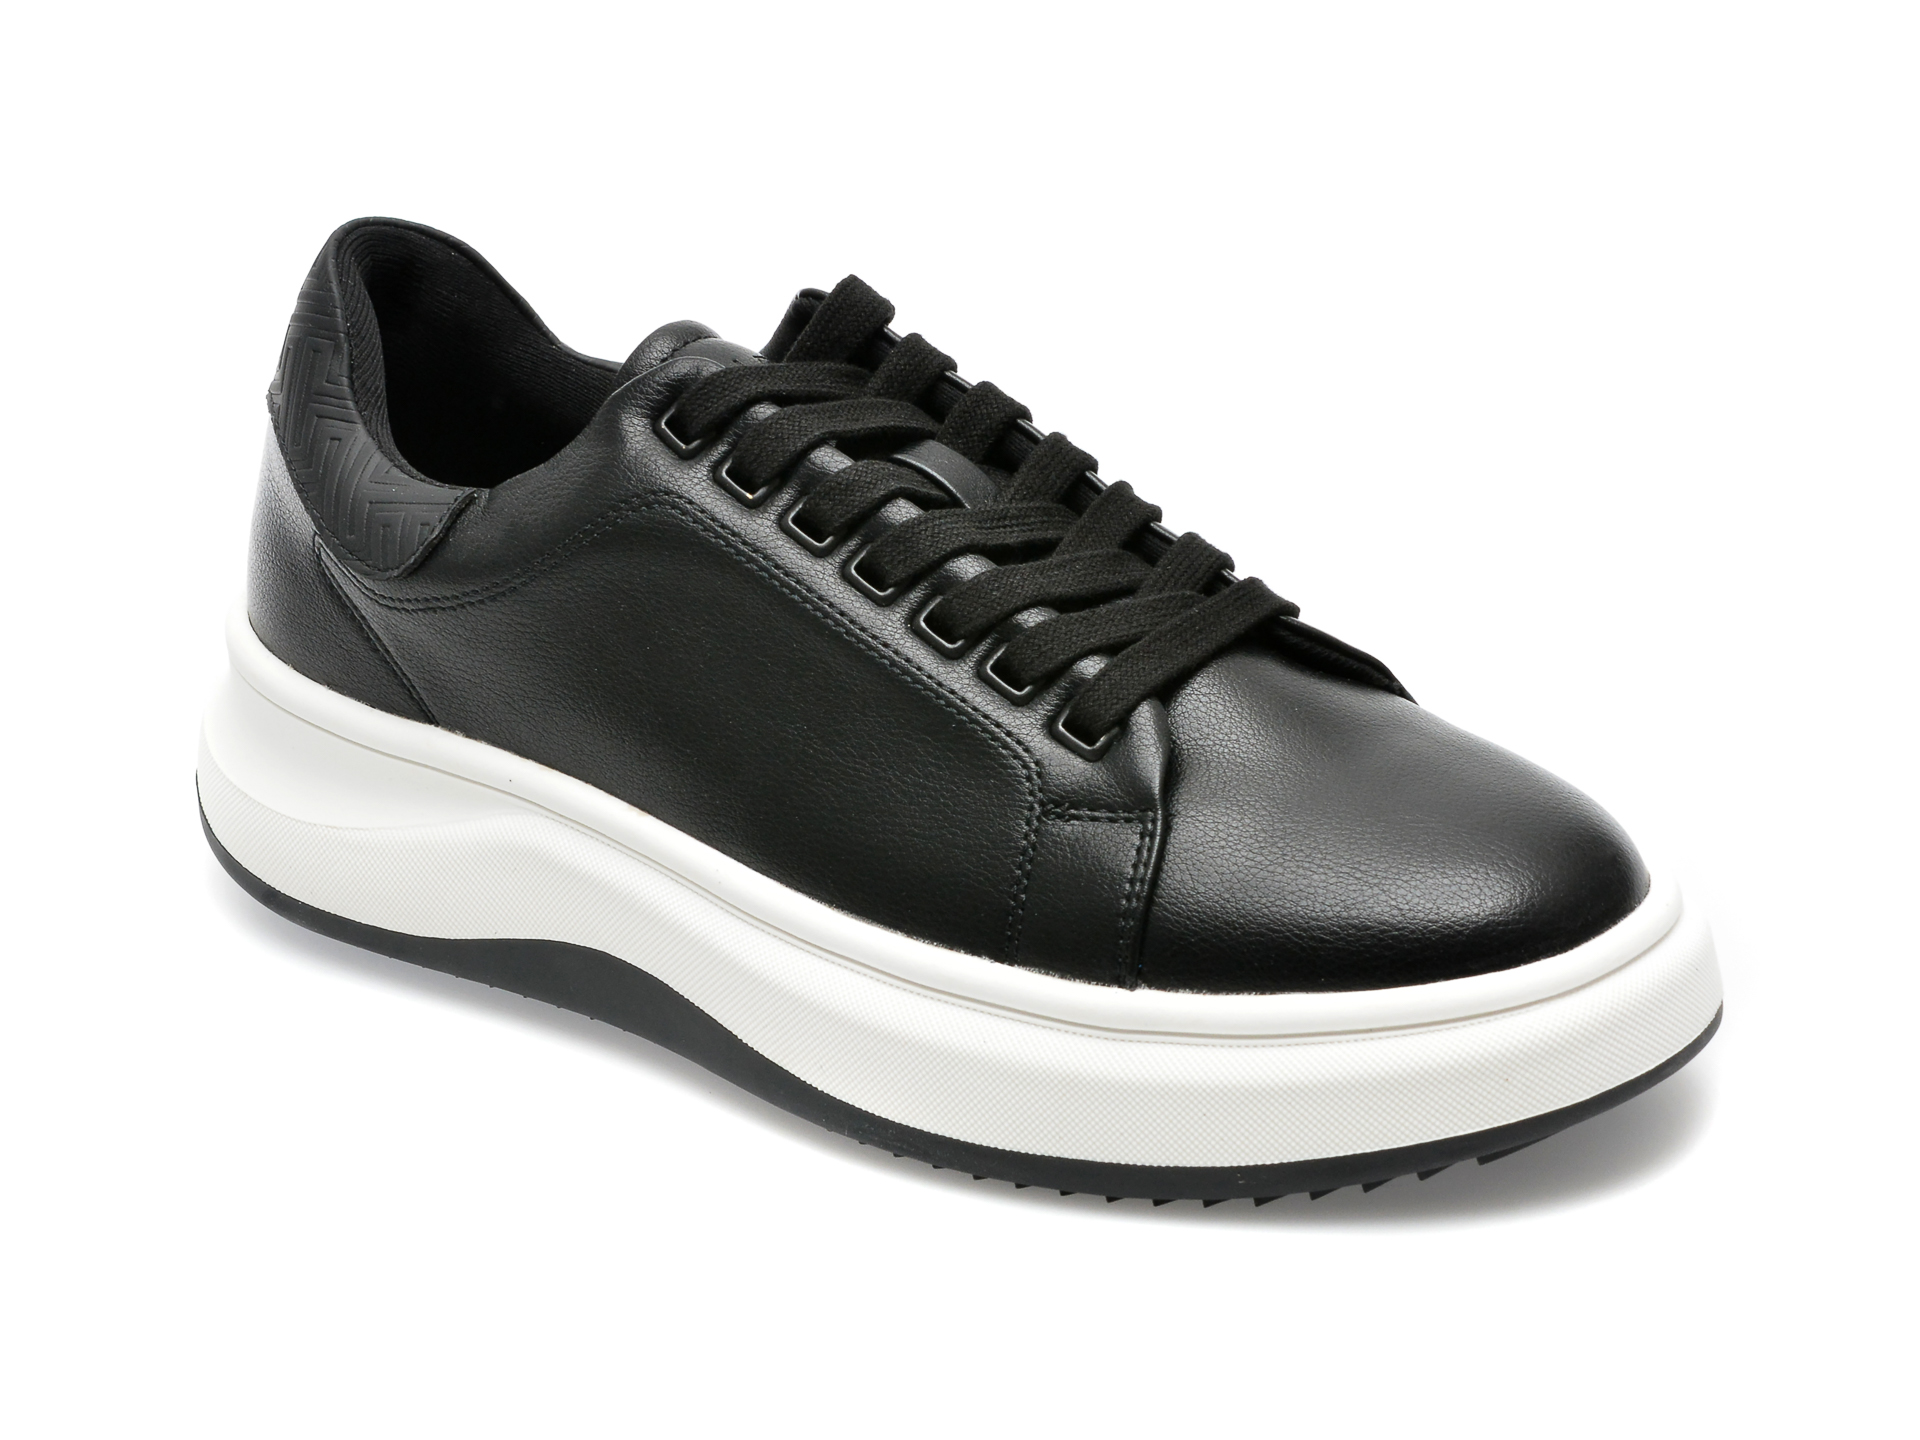 Pantofi ALDO negri, WAVESPEC001, din piele ecologica